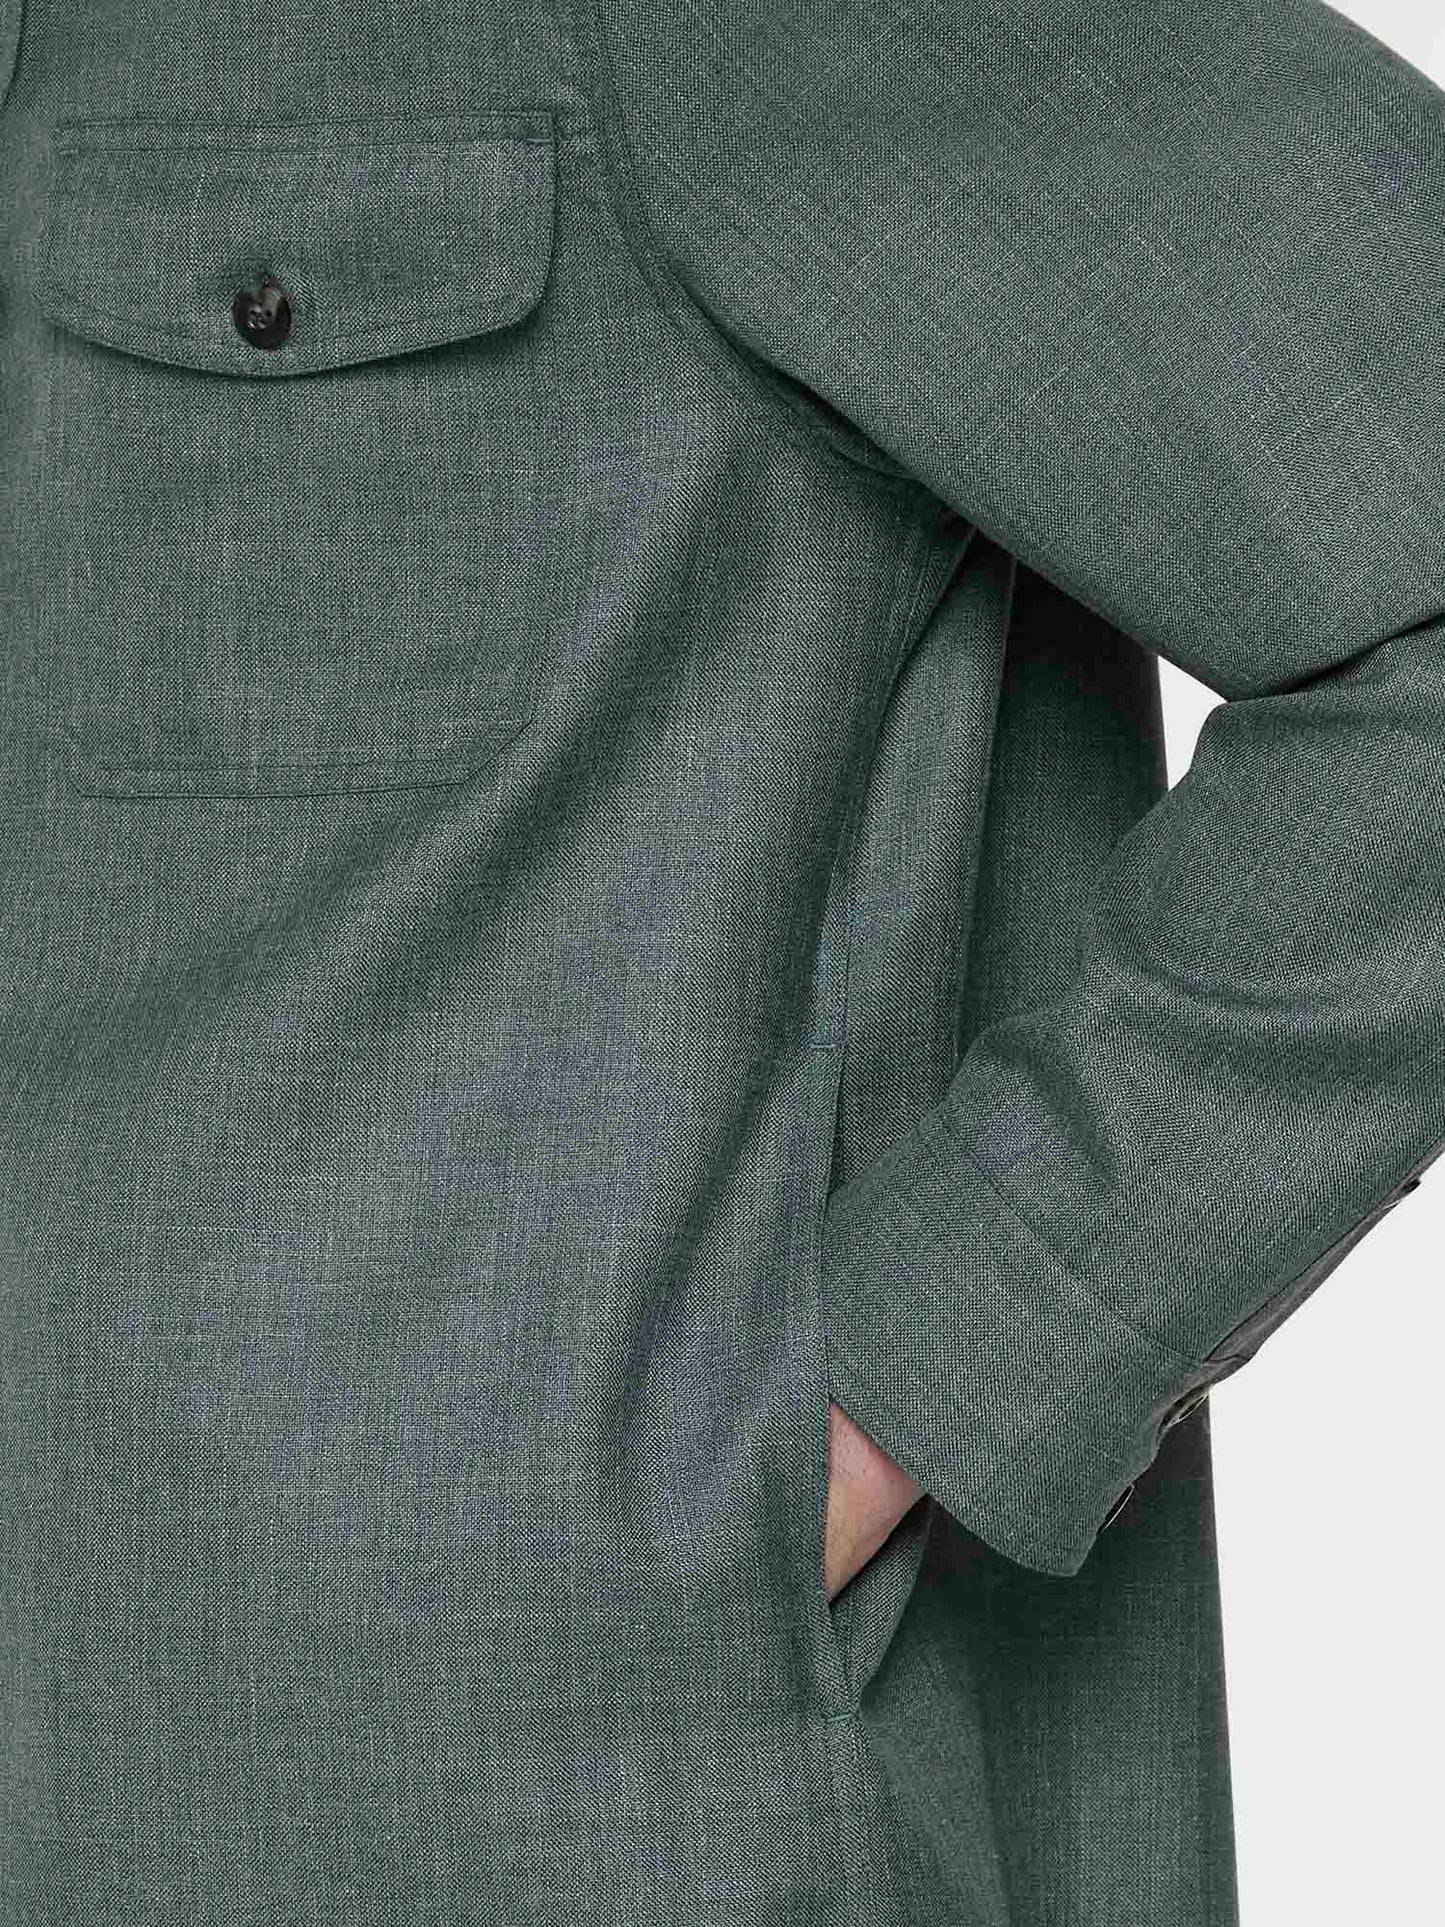 Caruso Menswear Abbigliamento Uomo Overshirt in lana, seta e lino verde dettaglio